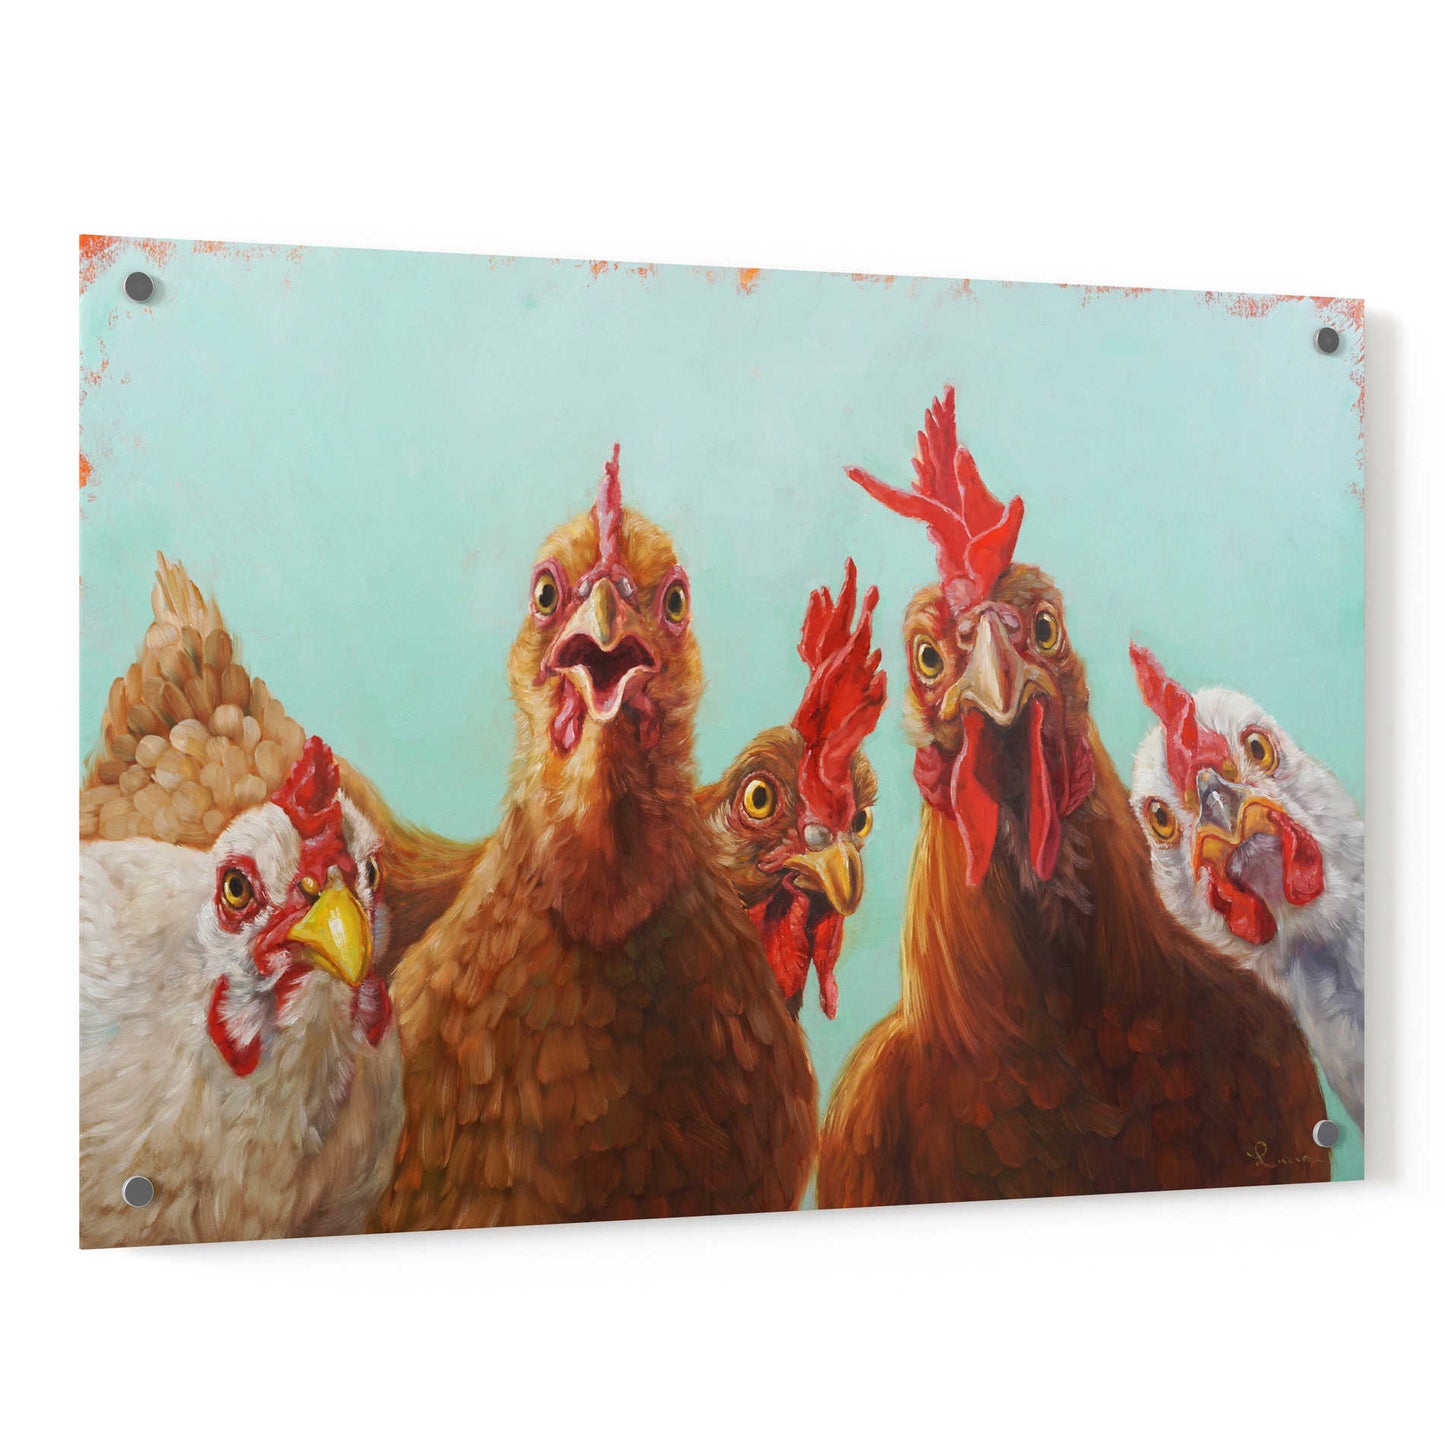 Epic Art 'Chicken for Dinner' by Lucia Heffernan, Acrylic Glass Wall Art,36x24